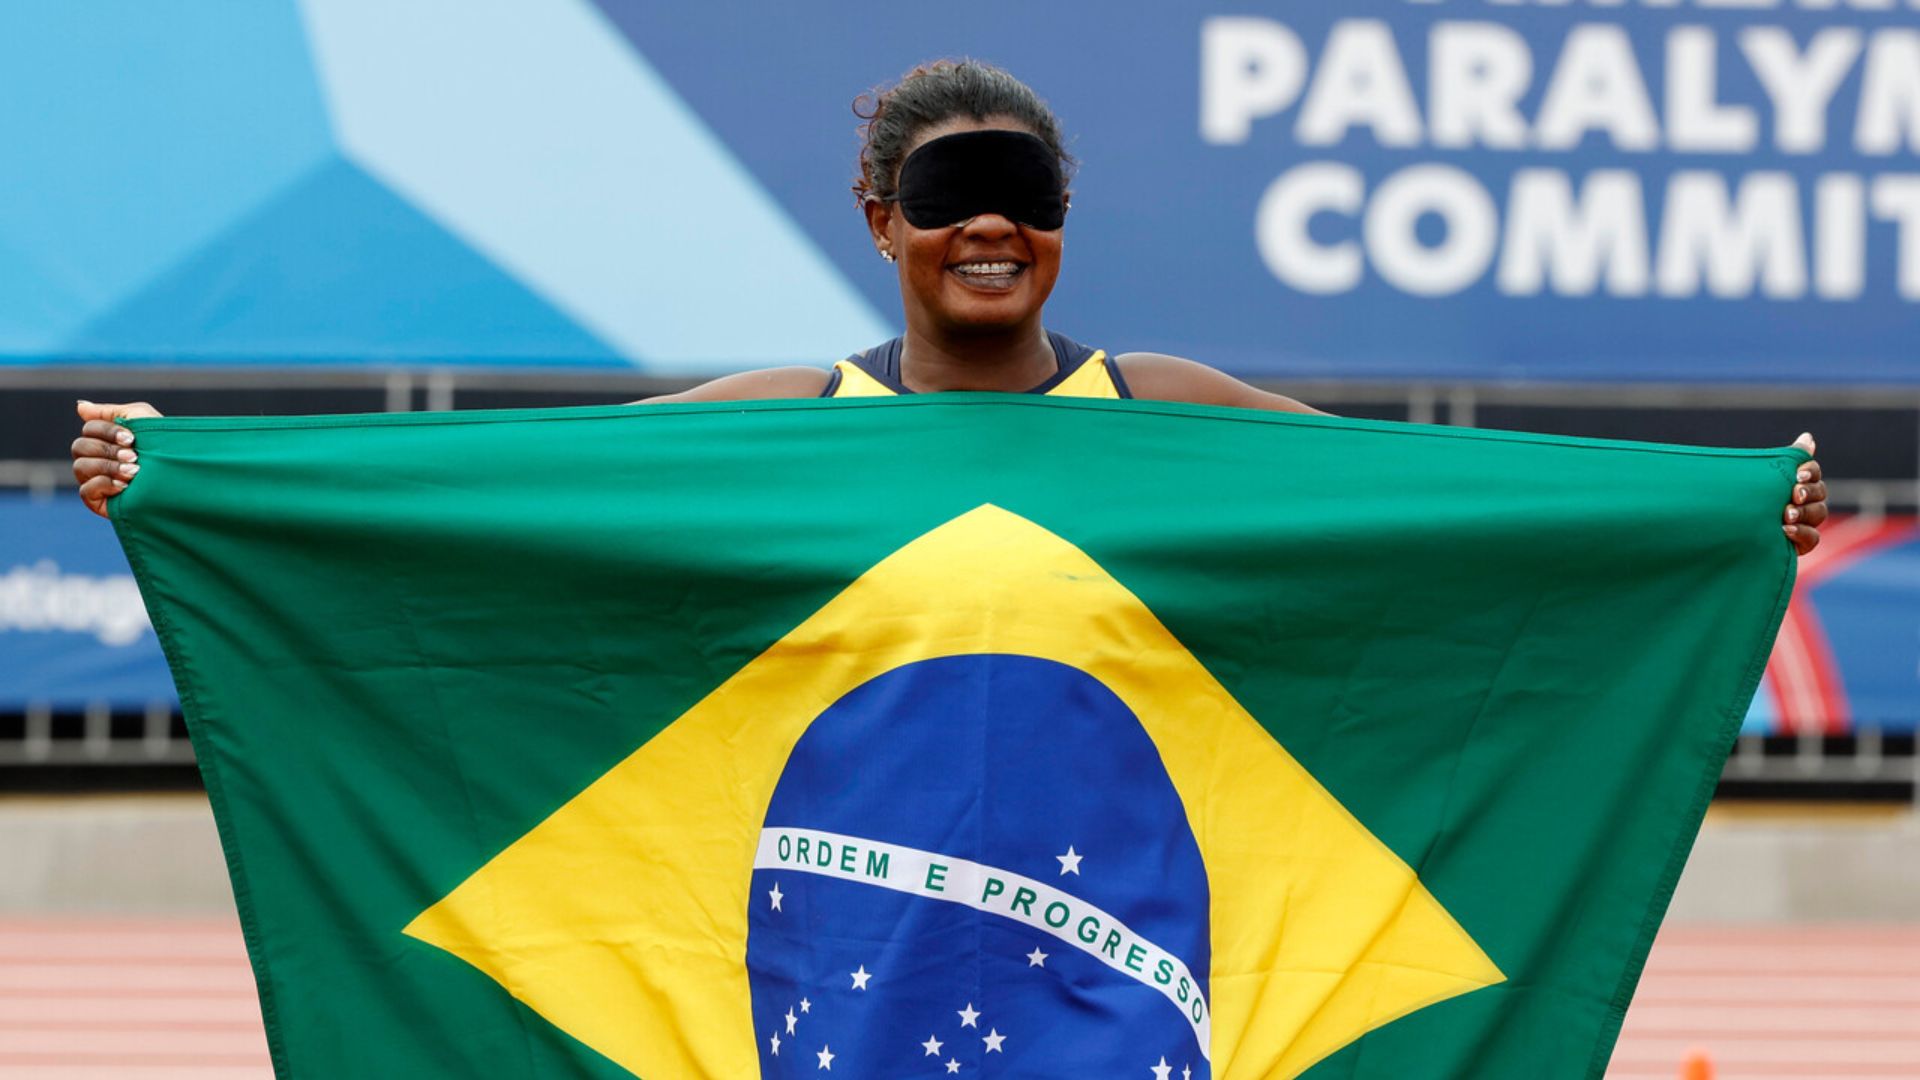 Para atletismo: Brasil manda en lanzamiento del disco y la bala